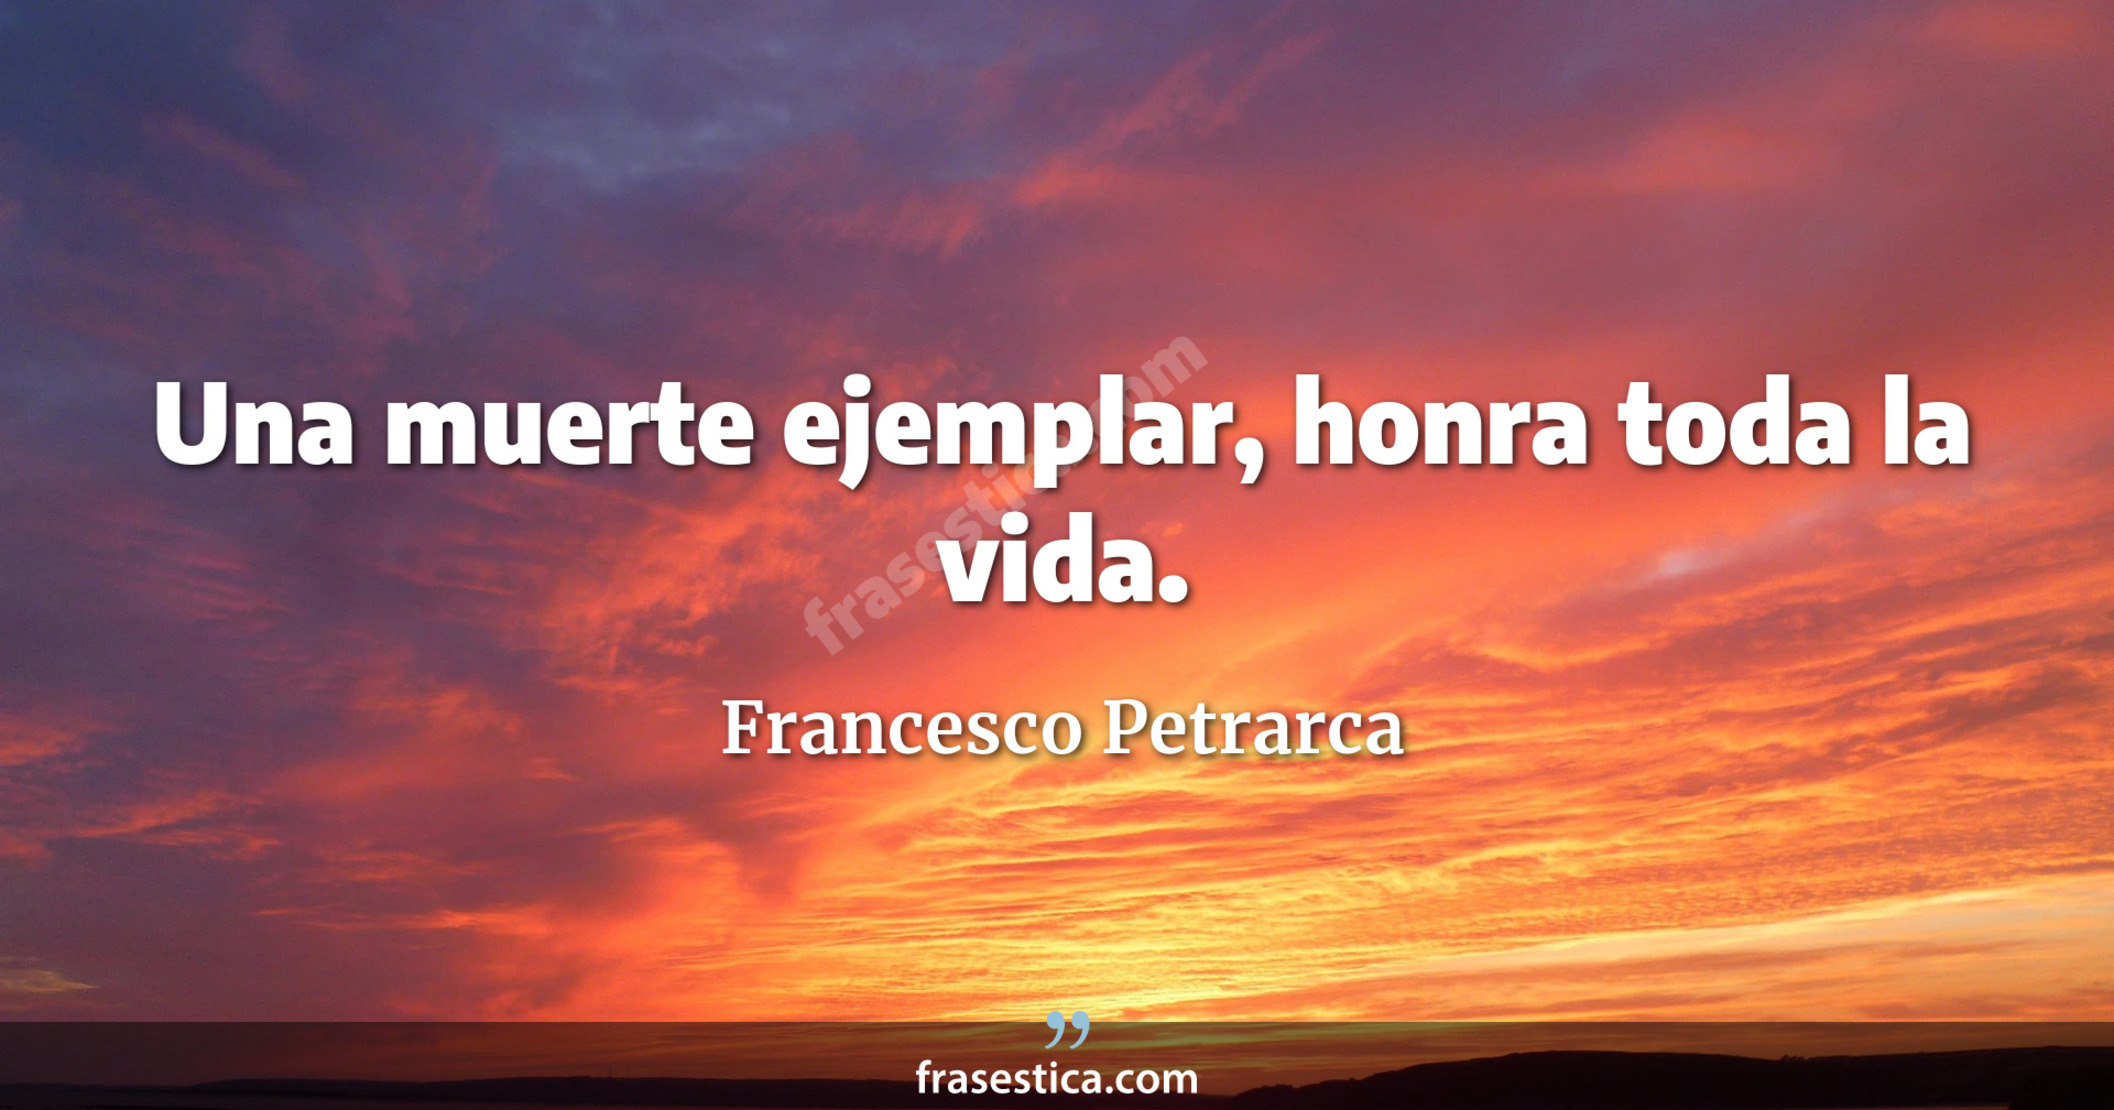 Una muerte ejemplar, honra toda la vida. - Francesco Petrarca